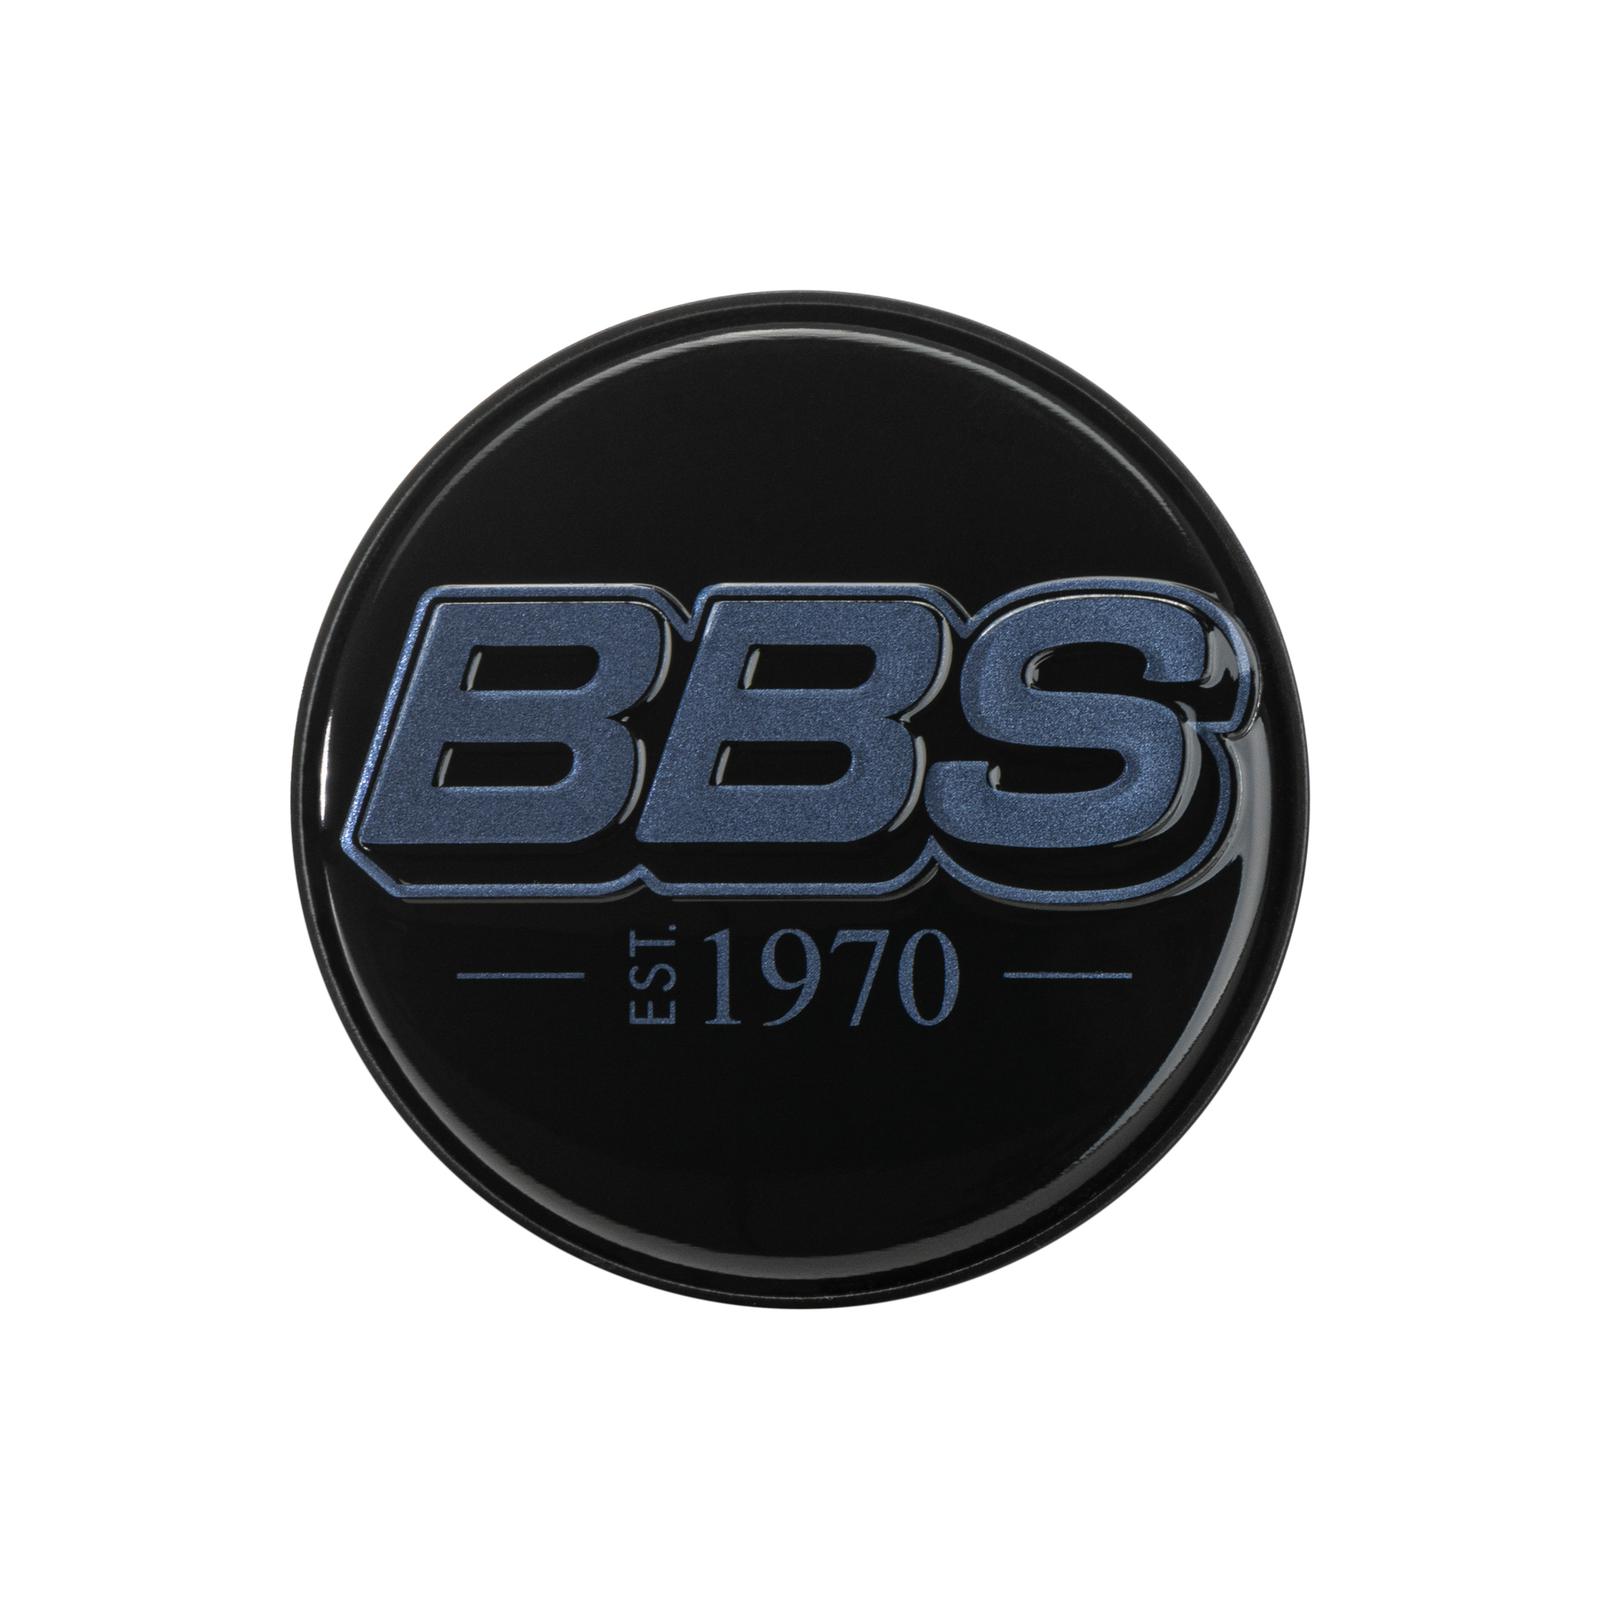 BBS 2D Nabendeckel est. 1970 geprägt schwarz mit Logo indigo blue Ø56mm